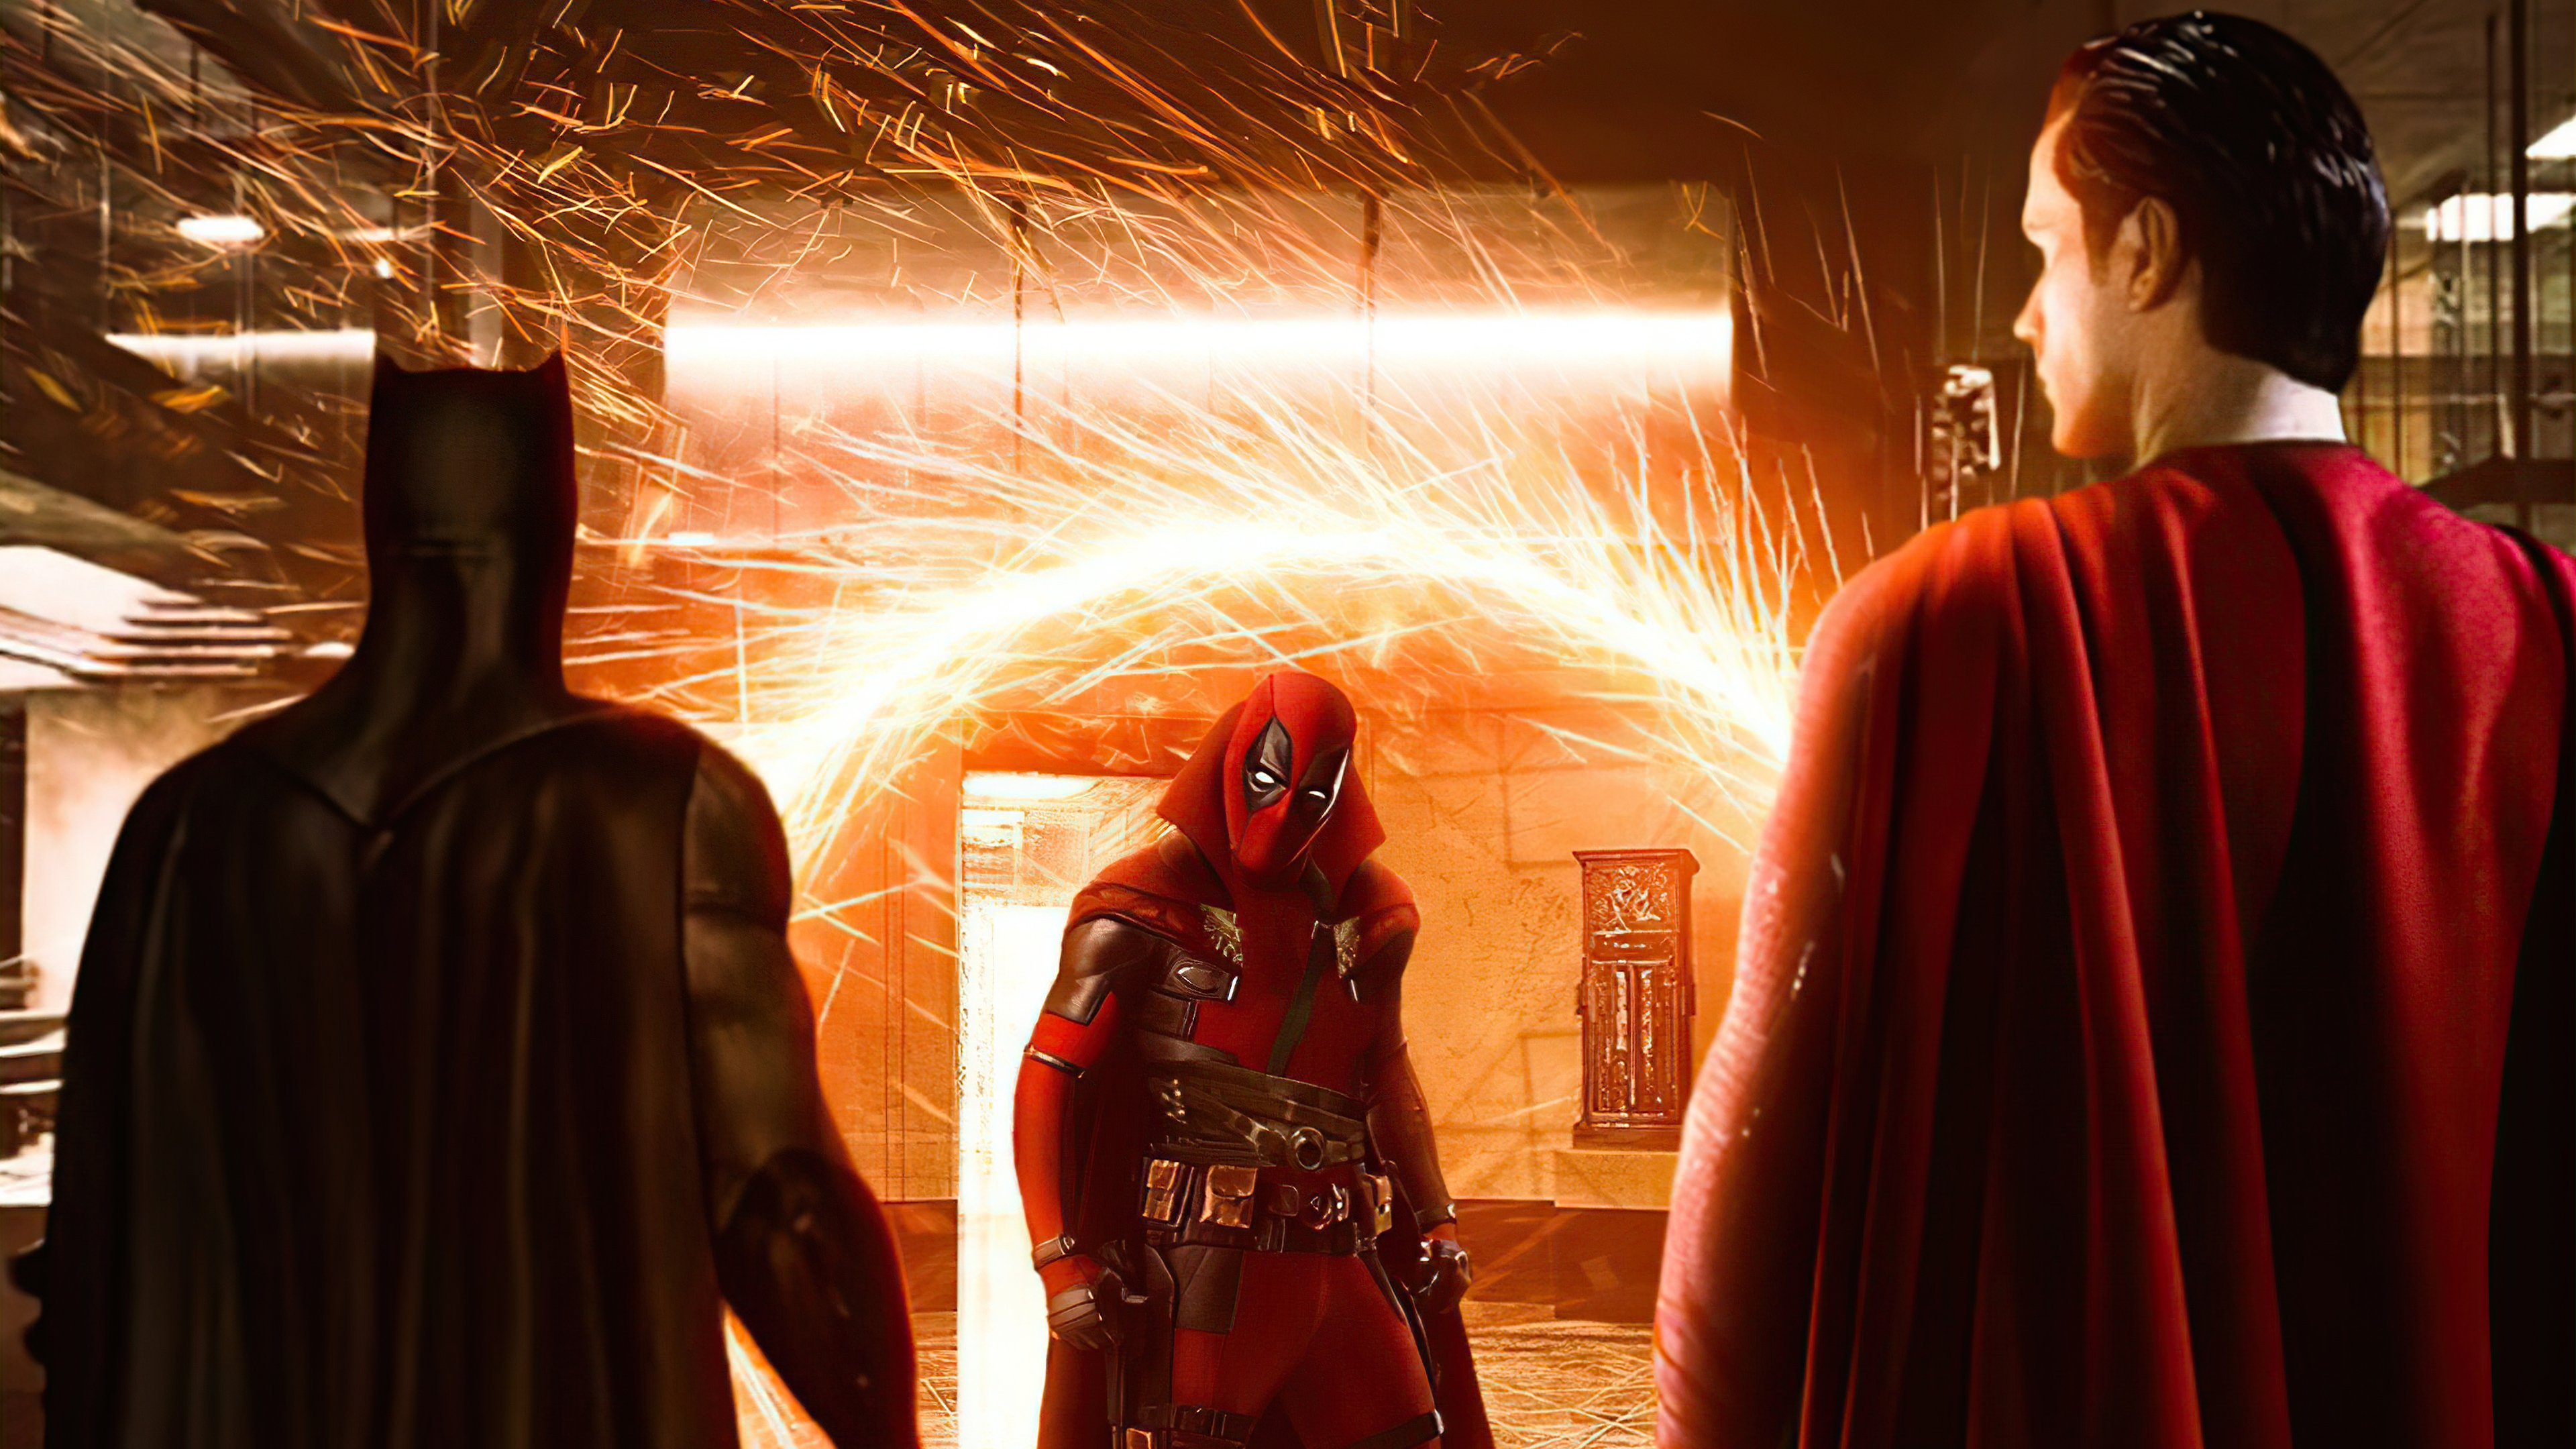 Fondos de pantalla Deadpool como Dr Strange con Batman y Superman